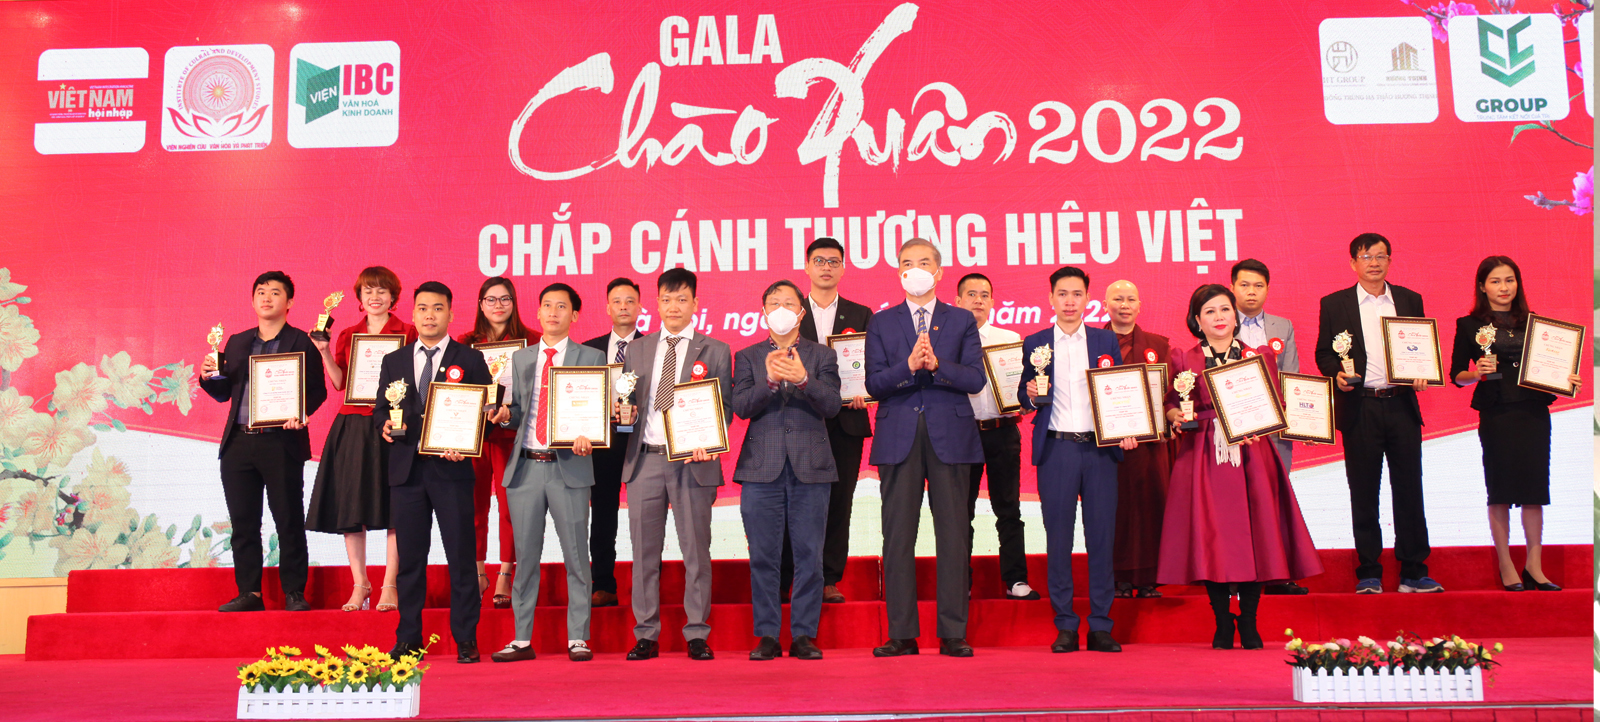 Gala chào xuân 2022: Chắp cánh ước mơ thương hiệu Việt.